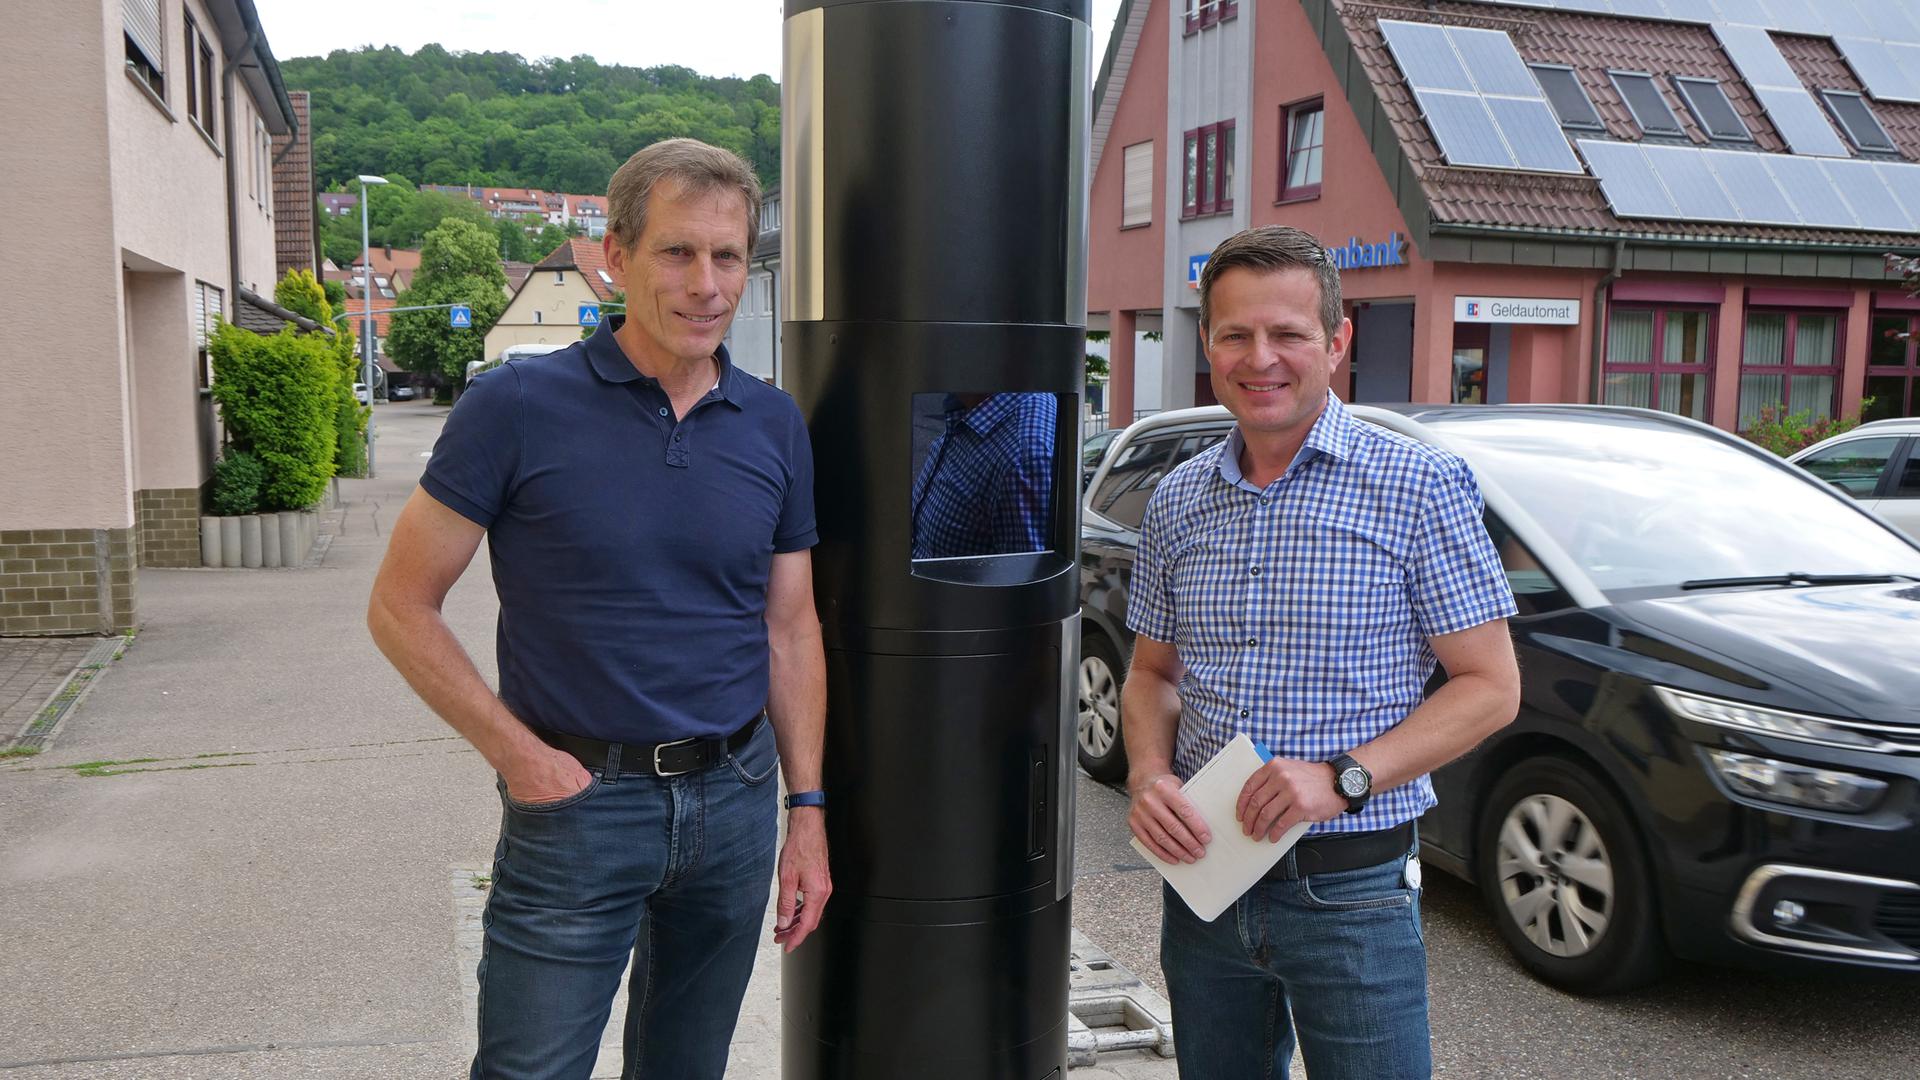 Stationäre Anlagen helfen, Verkehrslärm zu mindern und Verkehrssicherheit zu erhöhen, erklären Thomas Fritsch (links) und Oliver Müller bei der Vorstellung der Verkehrsüberwachungskonzeption des Enzkreises